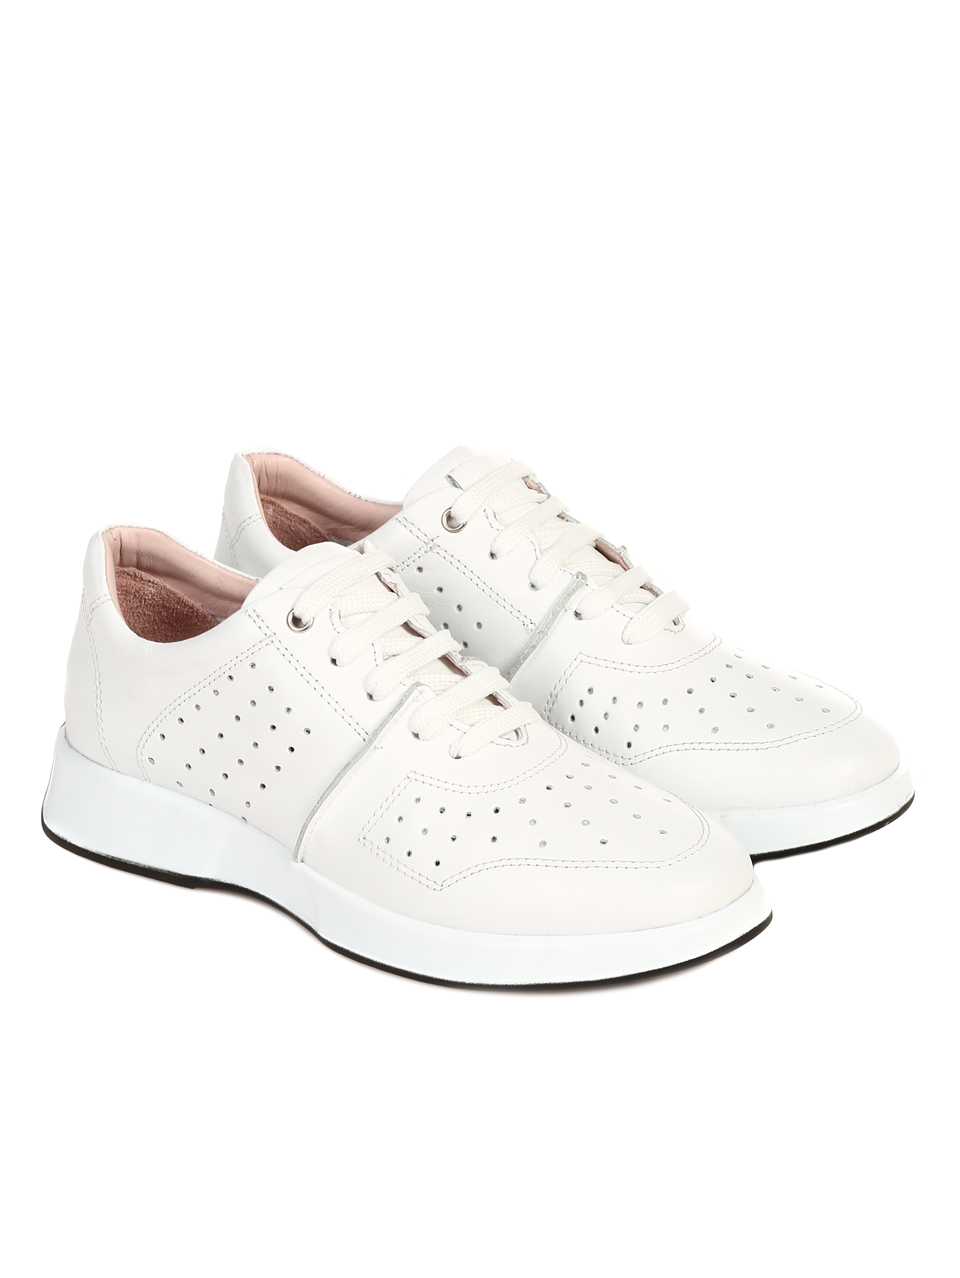 Ежедневни дамски обувки от естествена кожа в бяло 3AT-22306 white